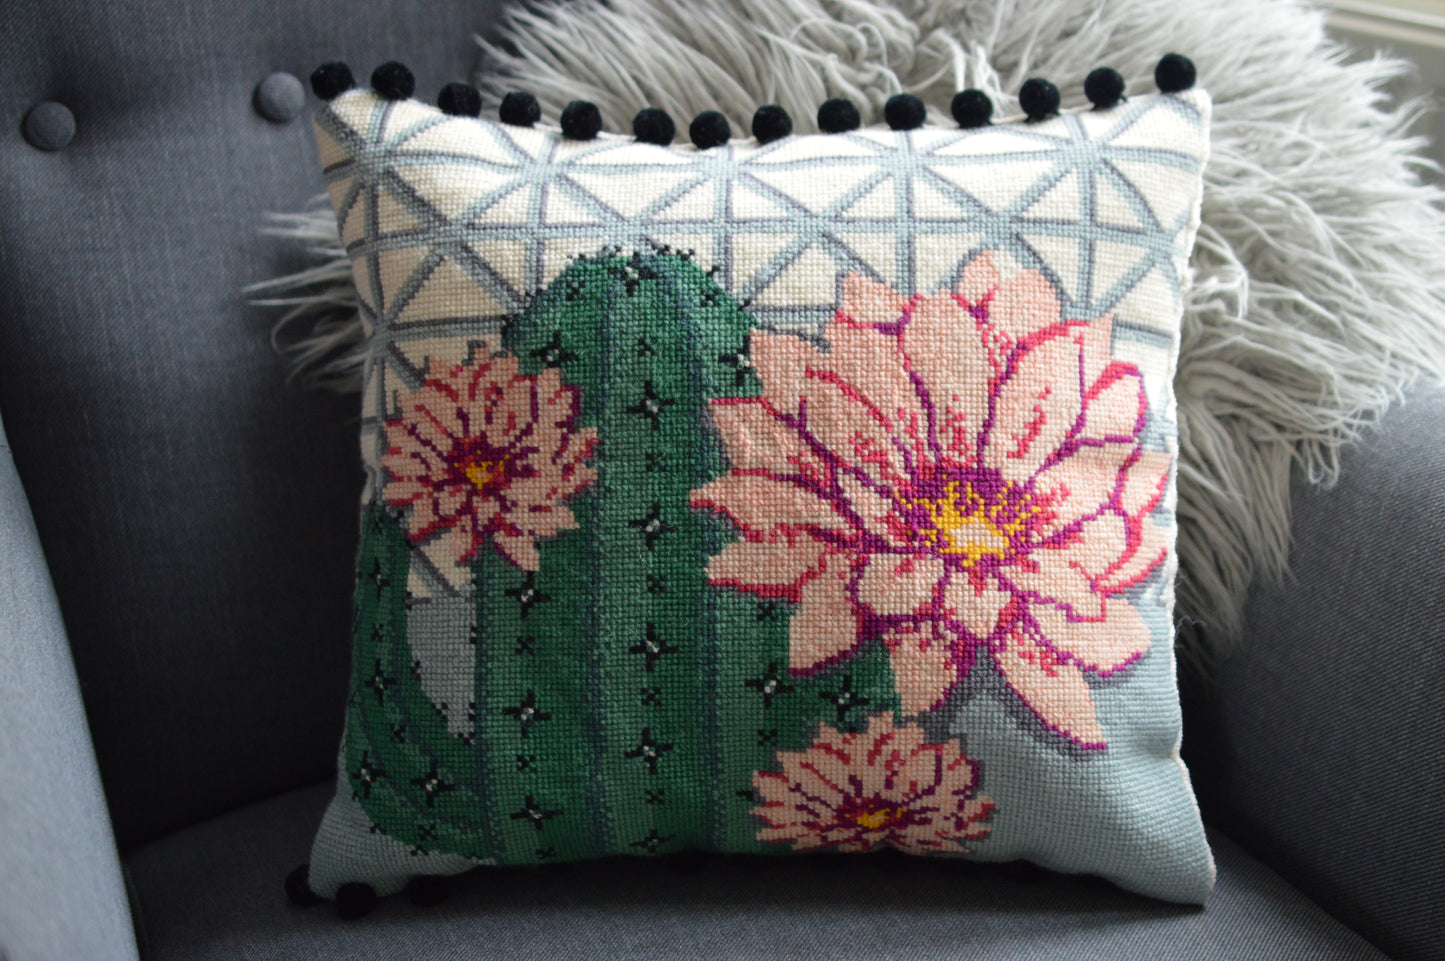 Finished needlepoint cushion cactus flower design